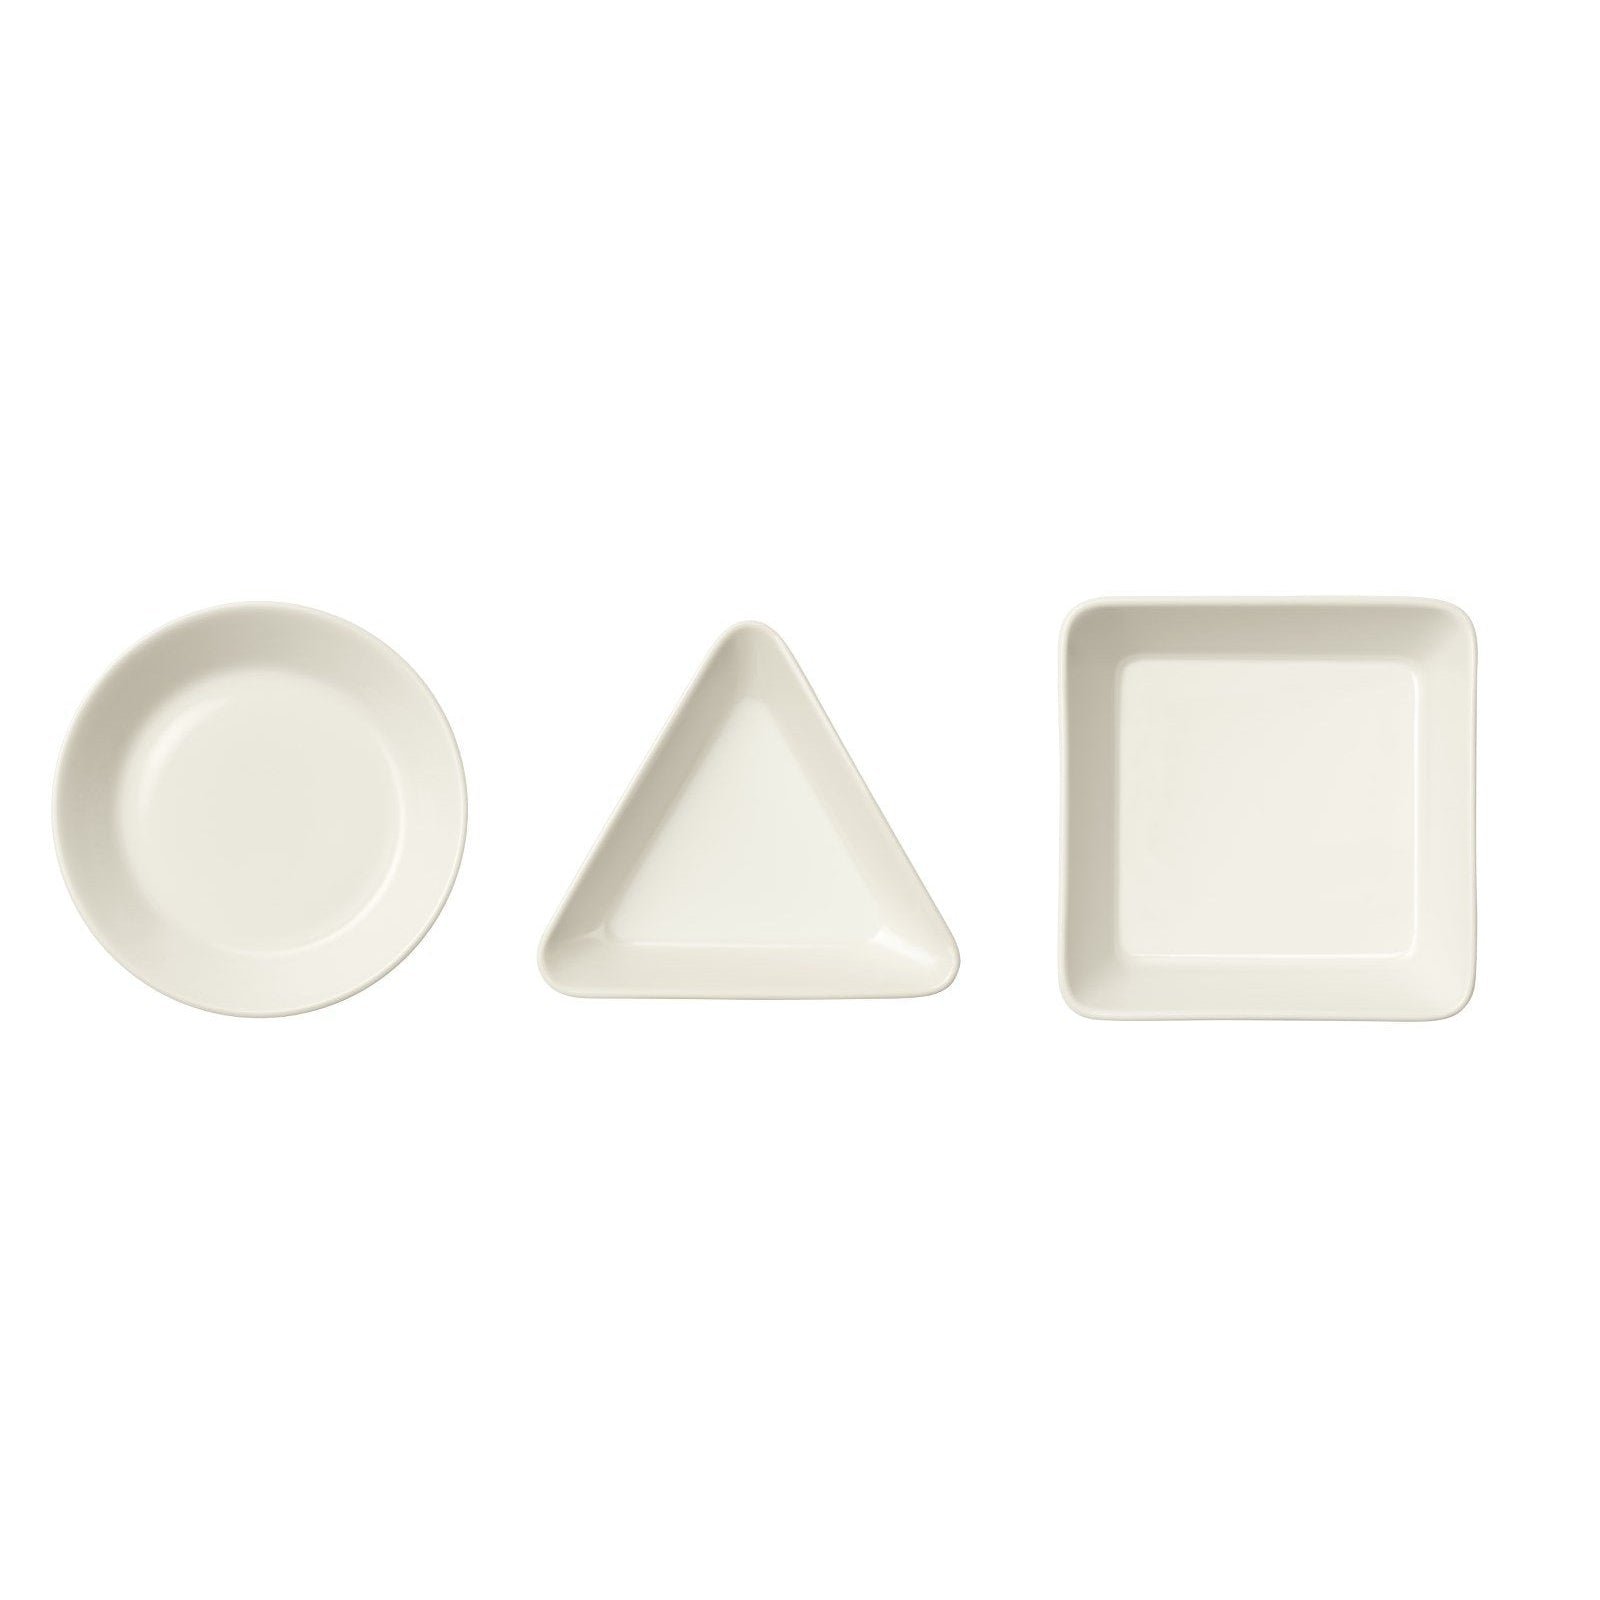 Iittala teema bowl set blanco, 3 piezas